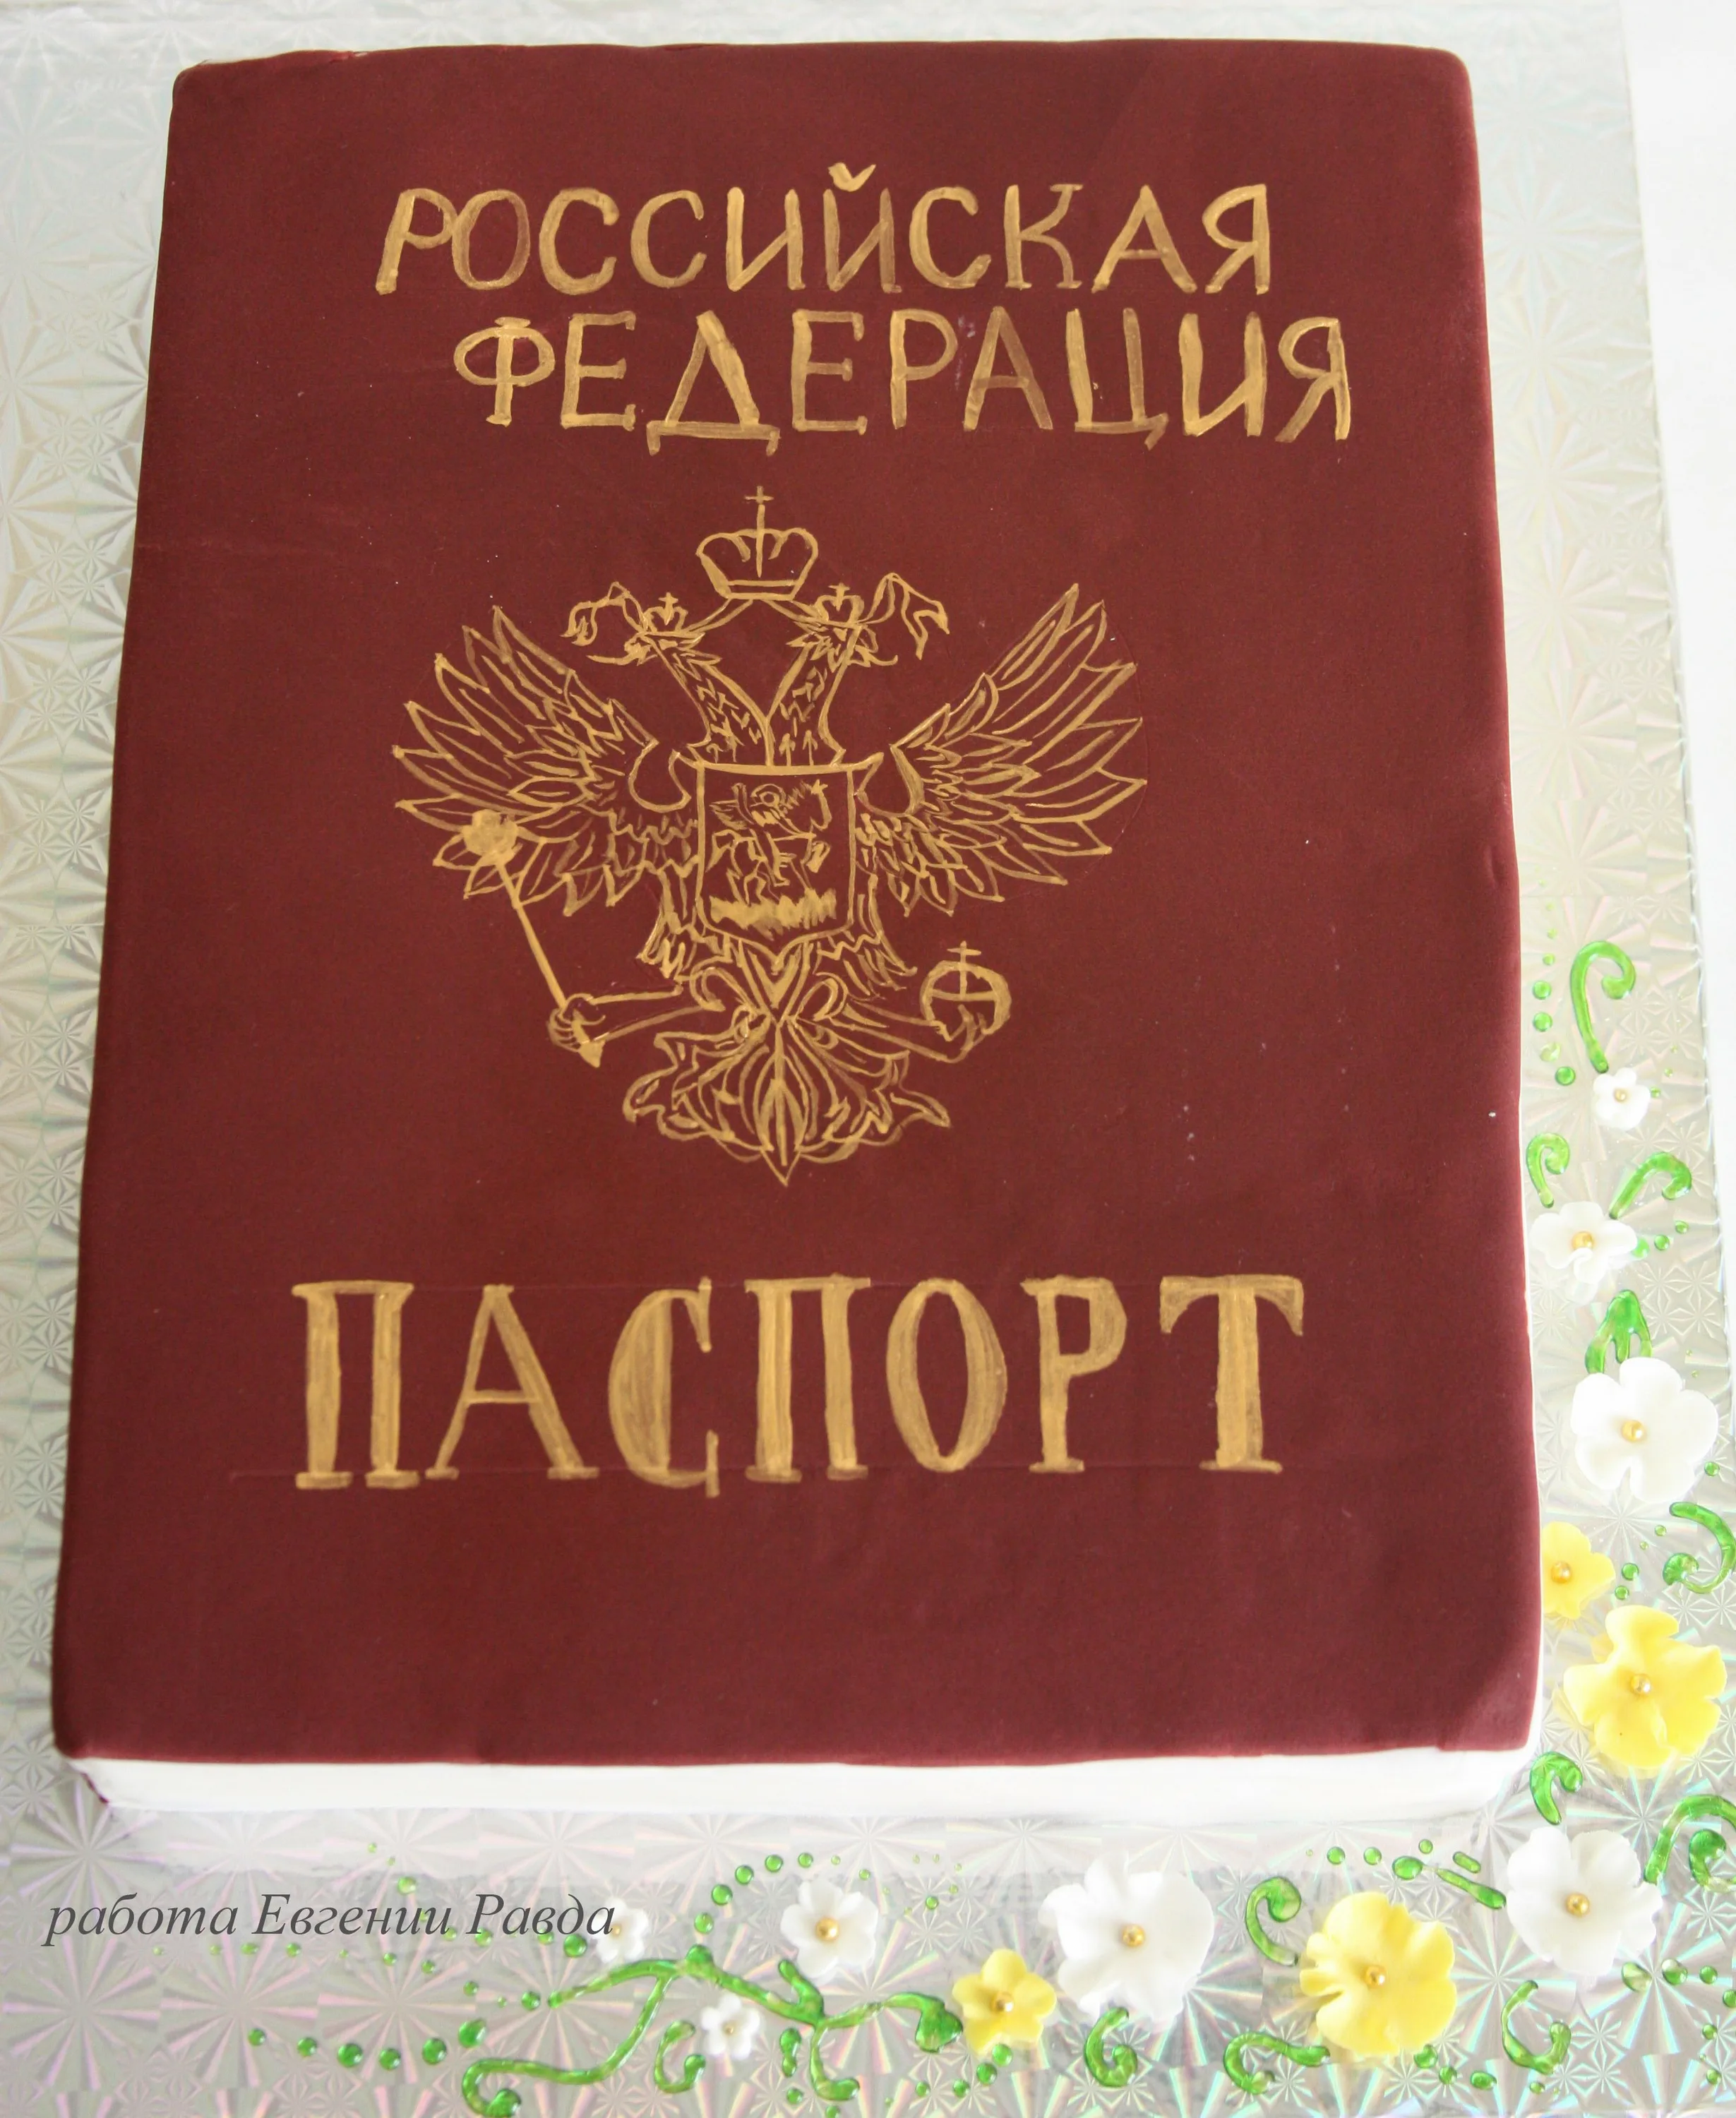 Фото Поздравление с получением паспорта в 14 лет #59